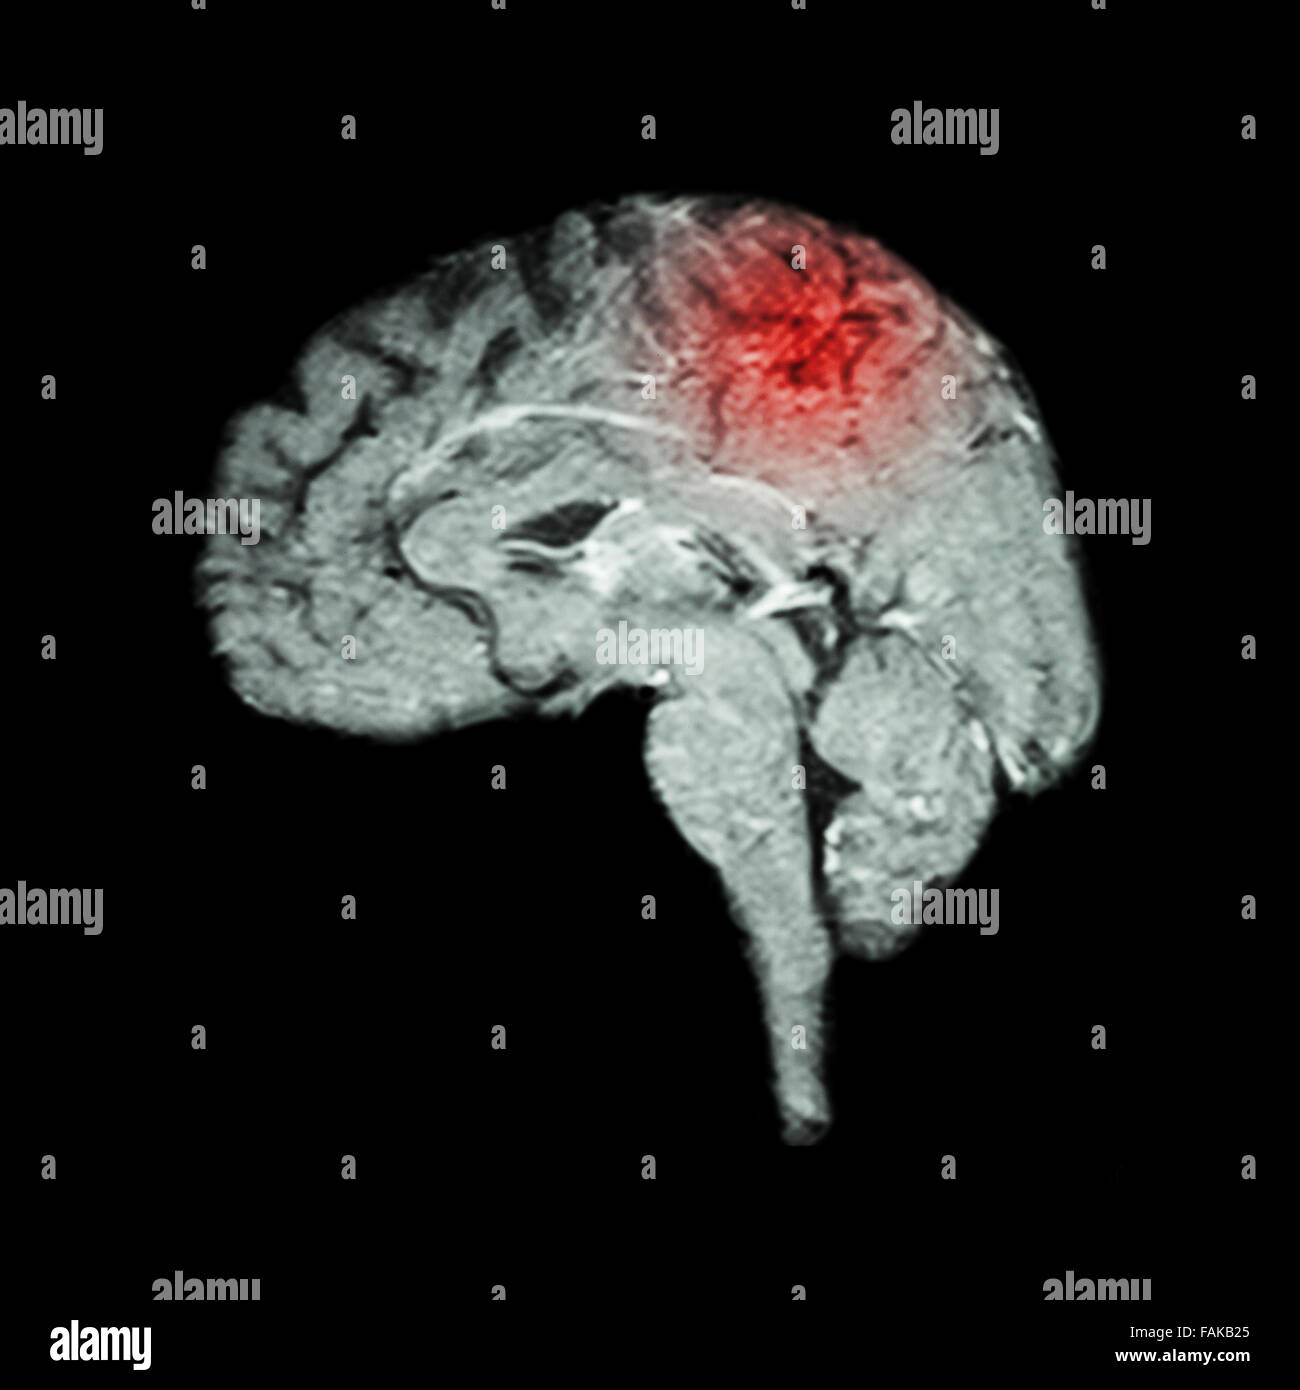 Magnet-Resonanz-Tomographie (MRT) des Gehirns und Schlaganfall (Medizin, Wissenschaft und Gesundheitswesen Konzept) Stockfoto